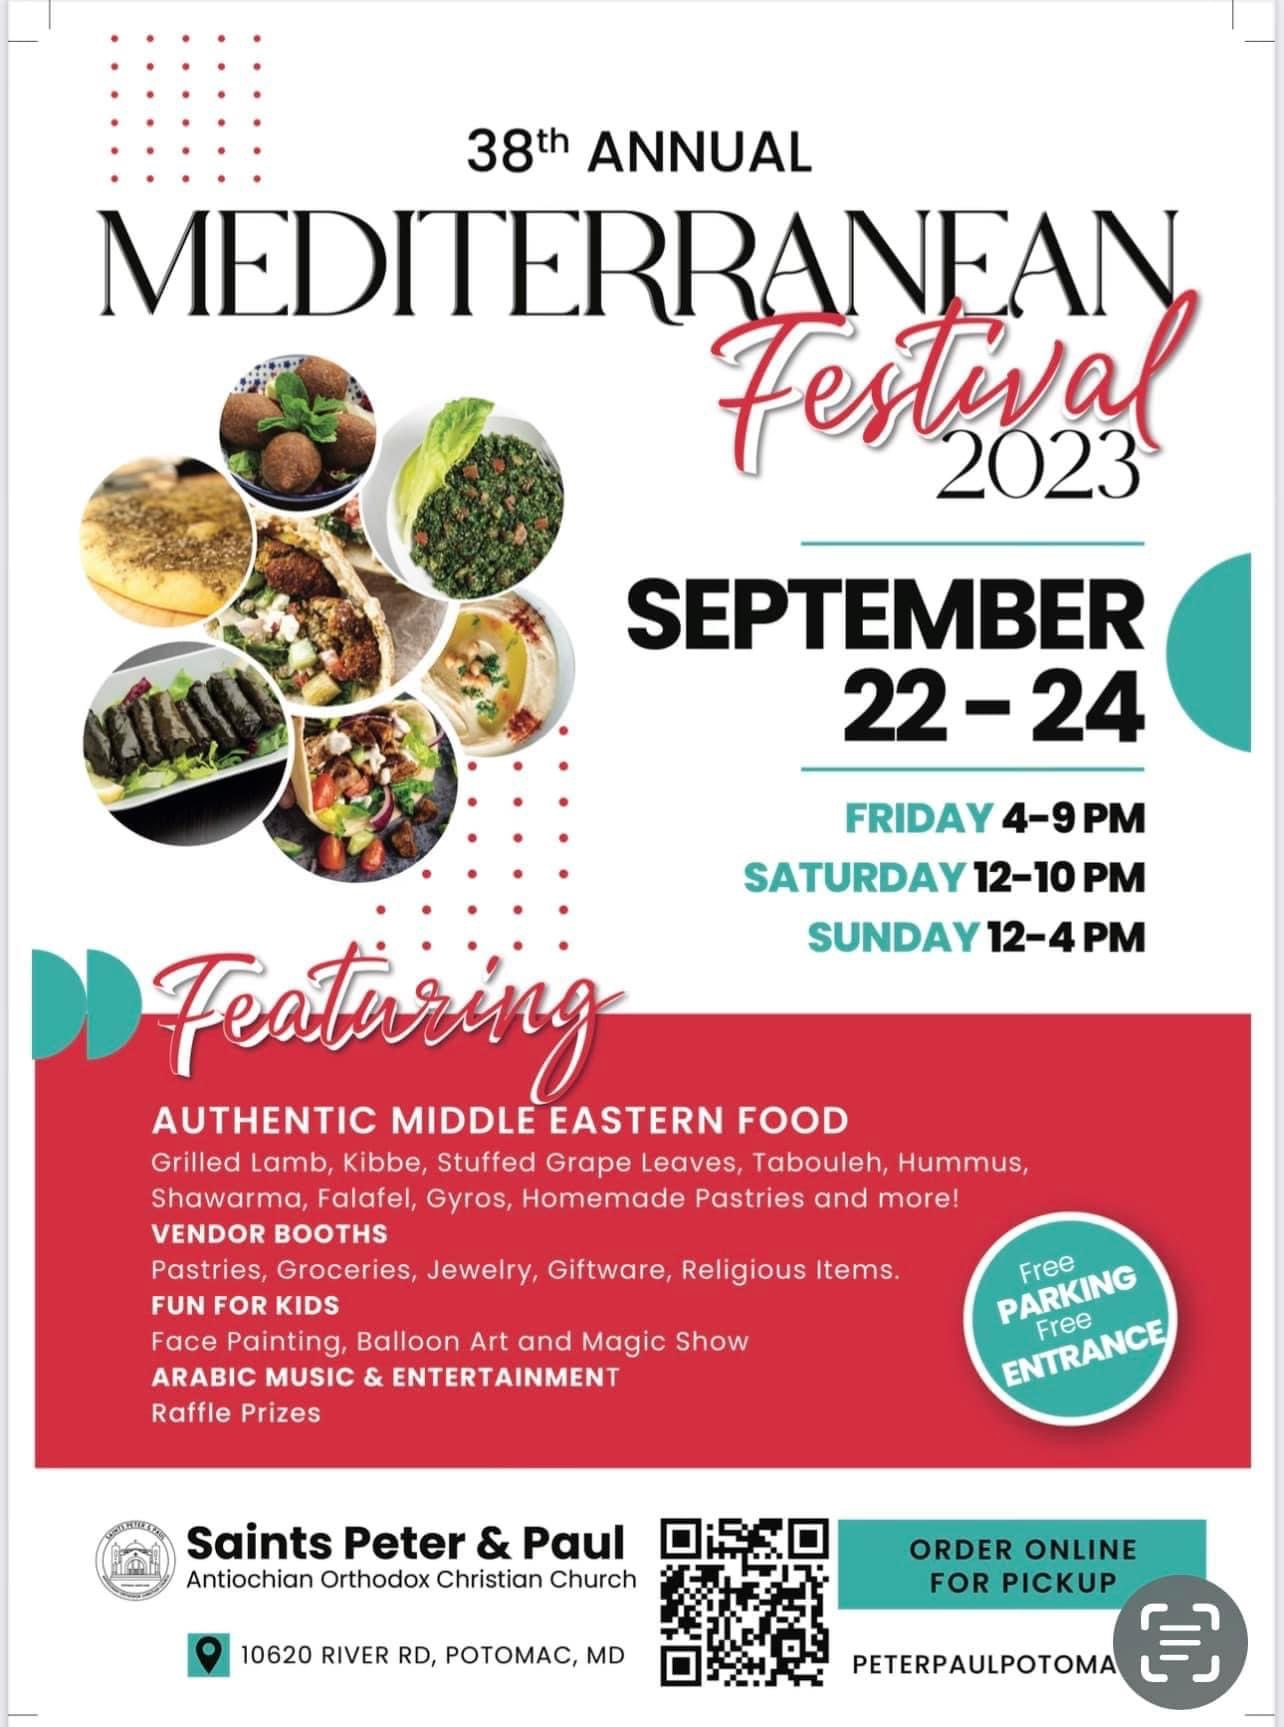 38th Annual Mediterranean Festival